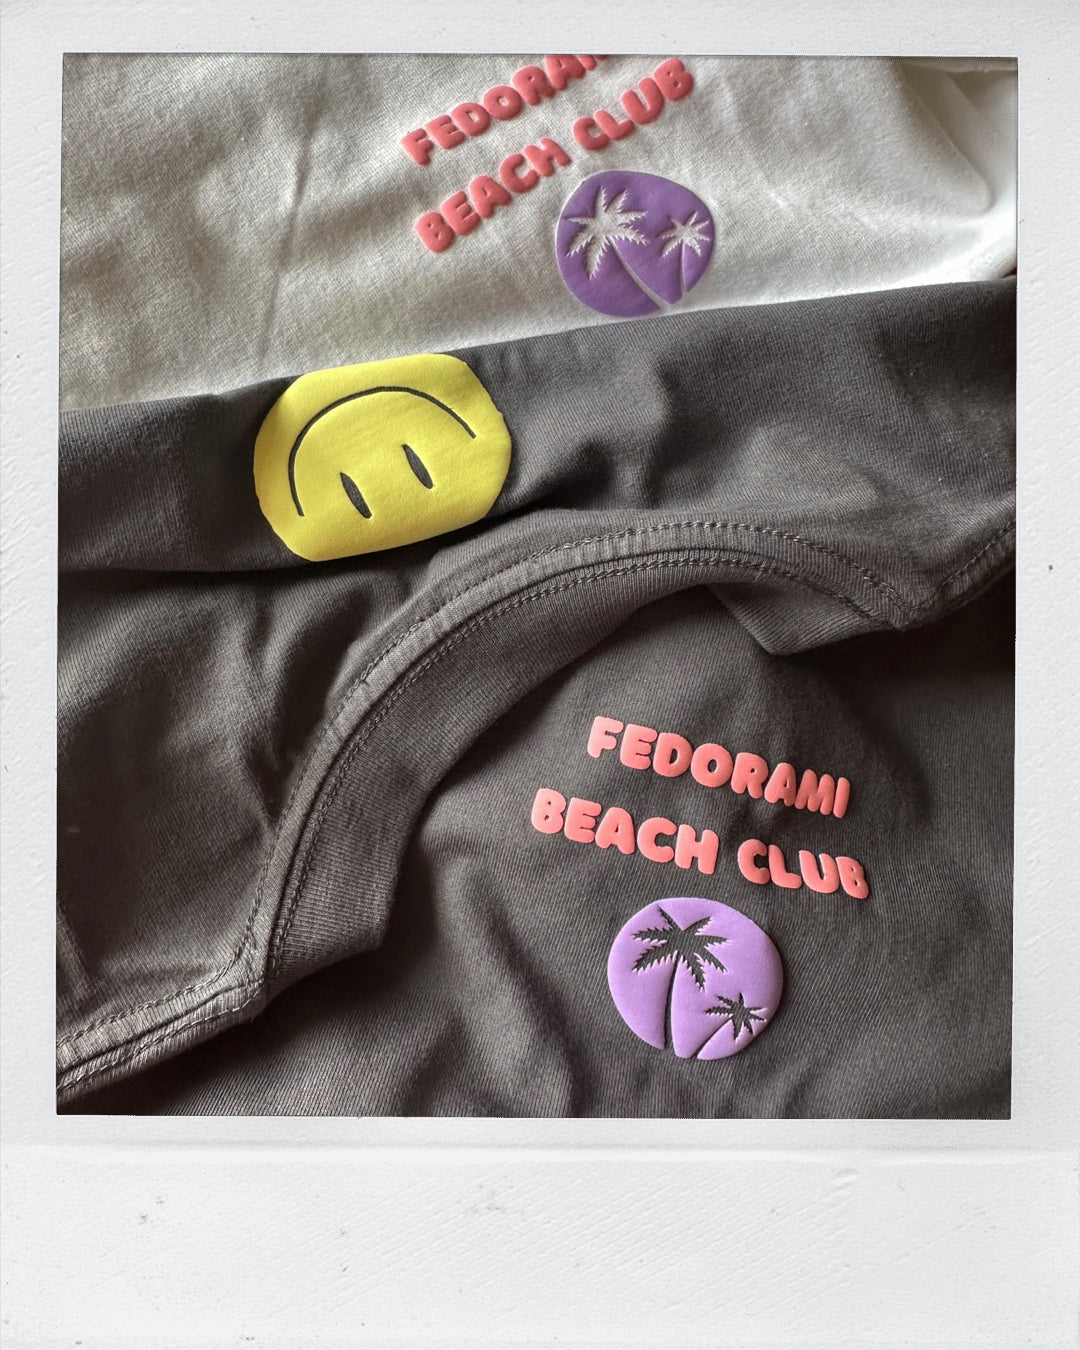 FedoraMi Beach Club